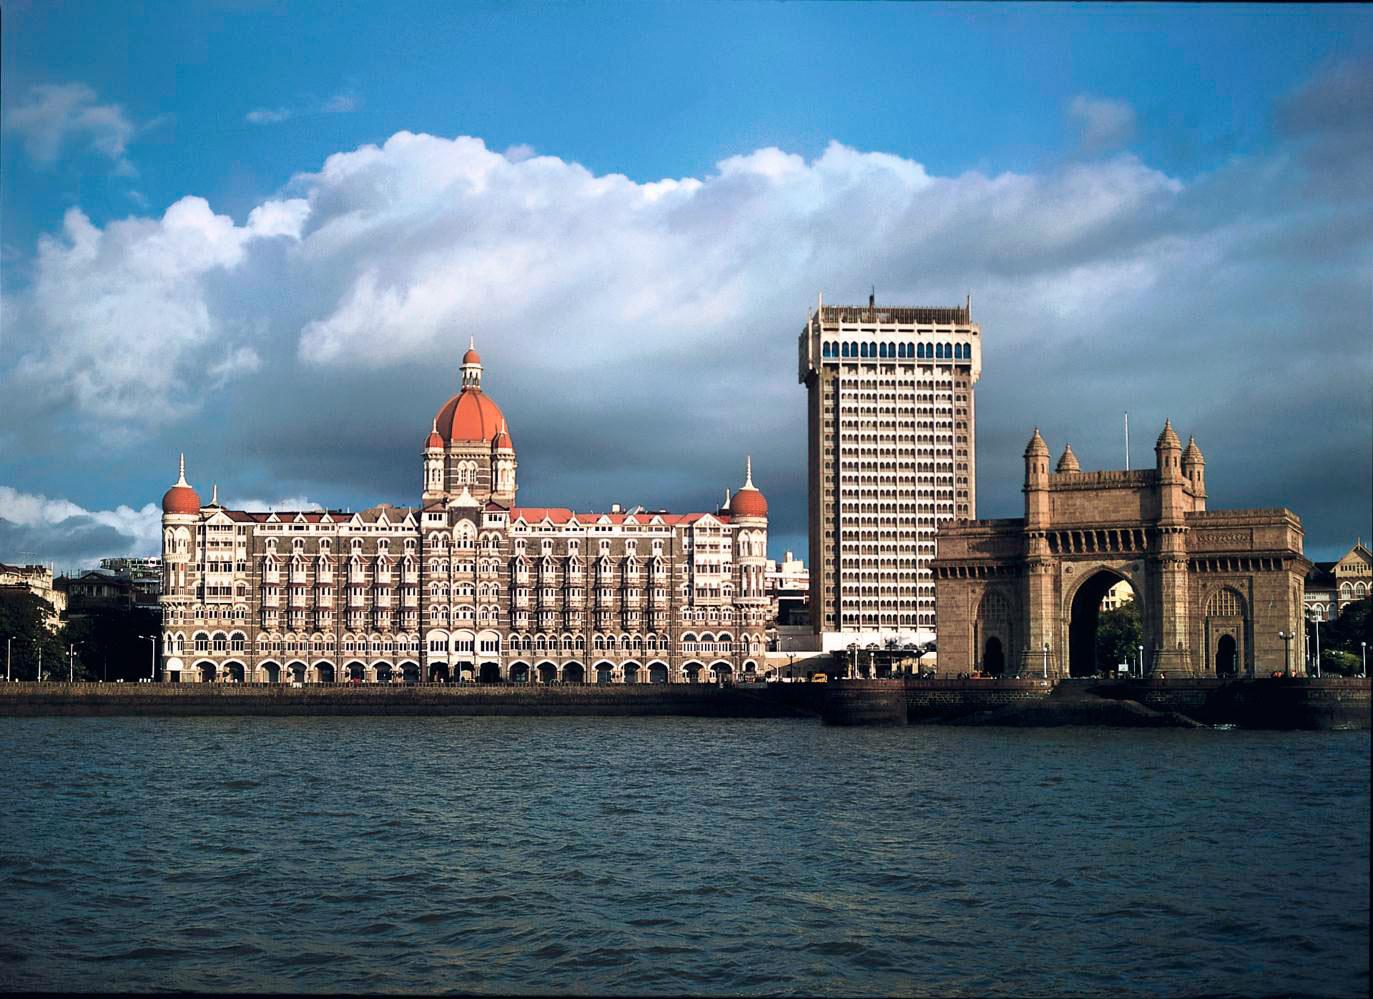 TAJ MAHAL PALACE, BOMBAY, INDIEN The Taj Mahal Palace är ett landmärke i Bombays hamn och inhyste den första licensierade baren i staden. Här har rader av brittiska kungligheter bott, som prinsen av Wales, hertigen av Edinburgh, hertigen och hertiginnan av Kent och prinsessan Eugenie.
Hotellets mest imponerande svit är presidentsviten på 5000 kvadratmeter med makrana-marmorgolv och guldbladsmålningar. Dubbelrum på hotellet från cirka 1600 kr/natt.